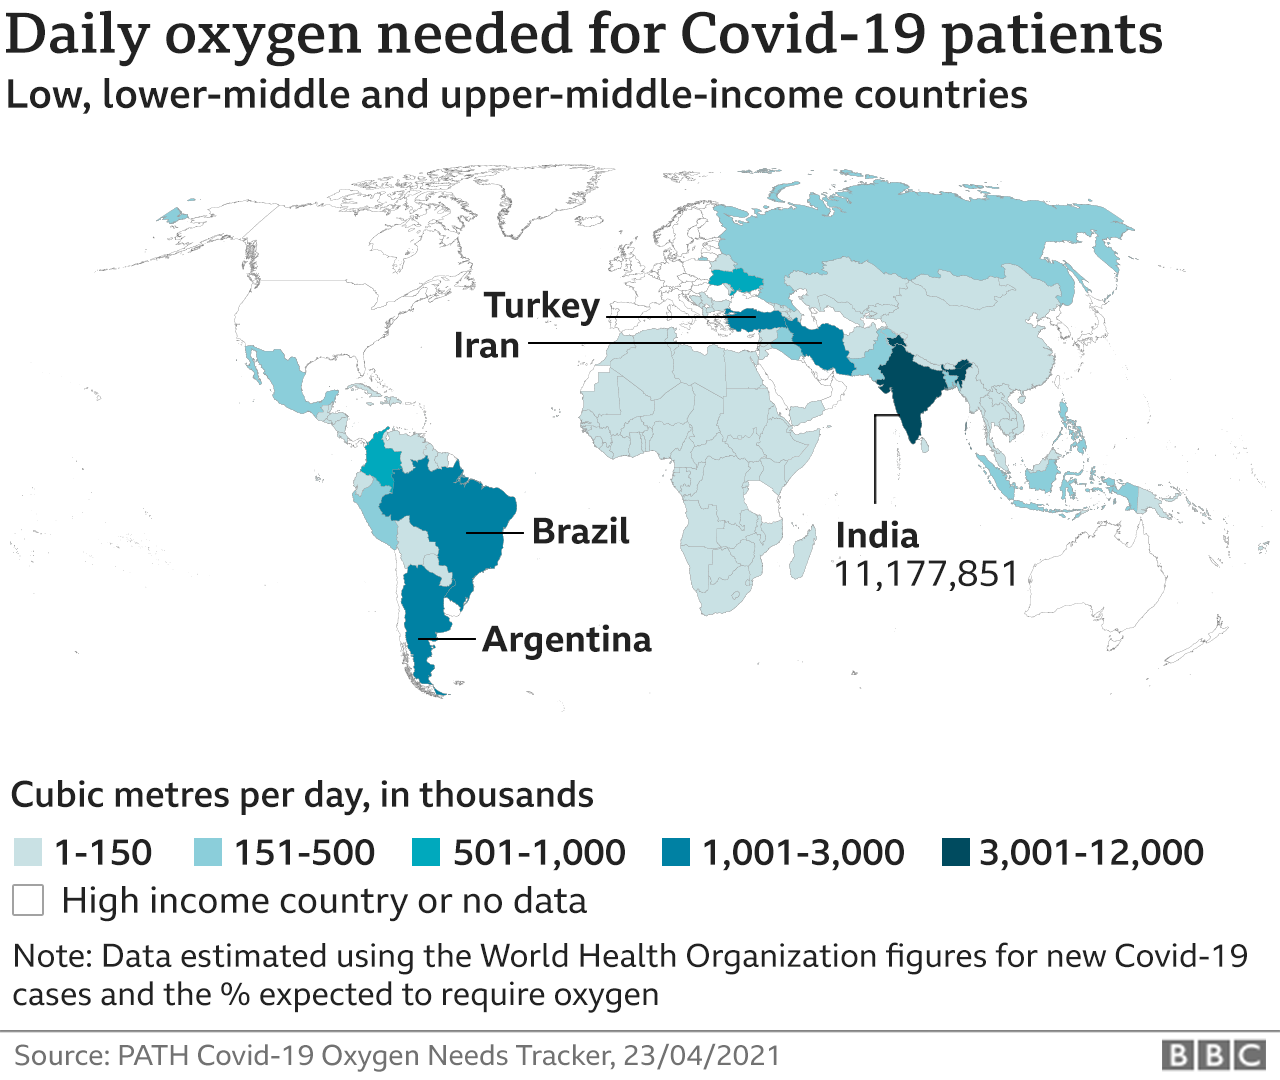 Карта, показывающая предполагаемые потребности в кислороде в странах с низким, средним и выше среднего уровнем доходов, с самым высоким показателем в Индии